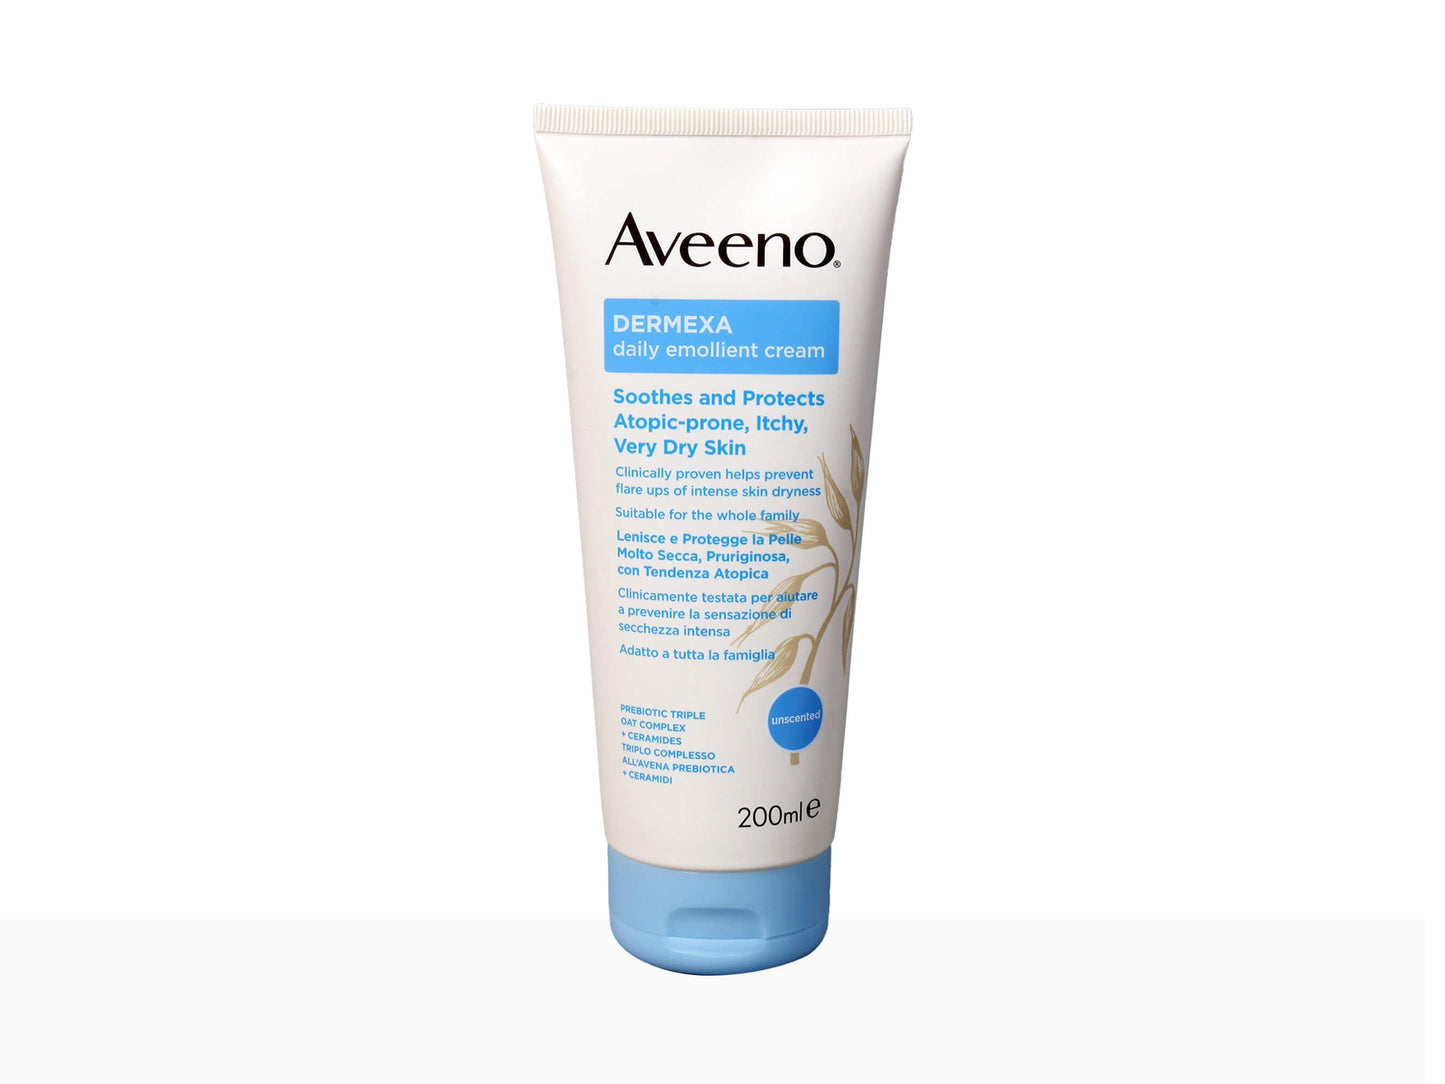 Aveeno Dermexa Daily Emollient Cream, 200ml